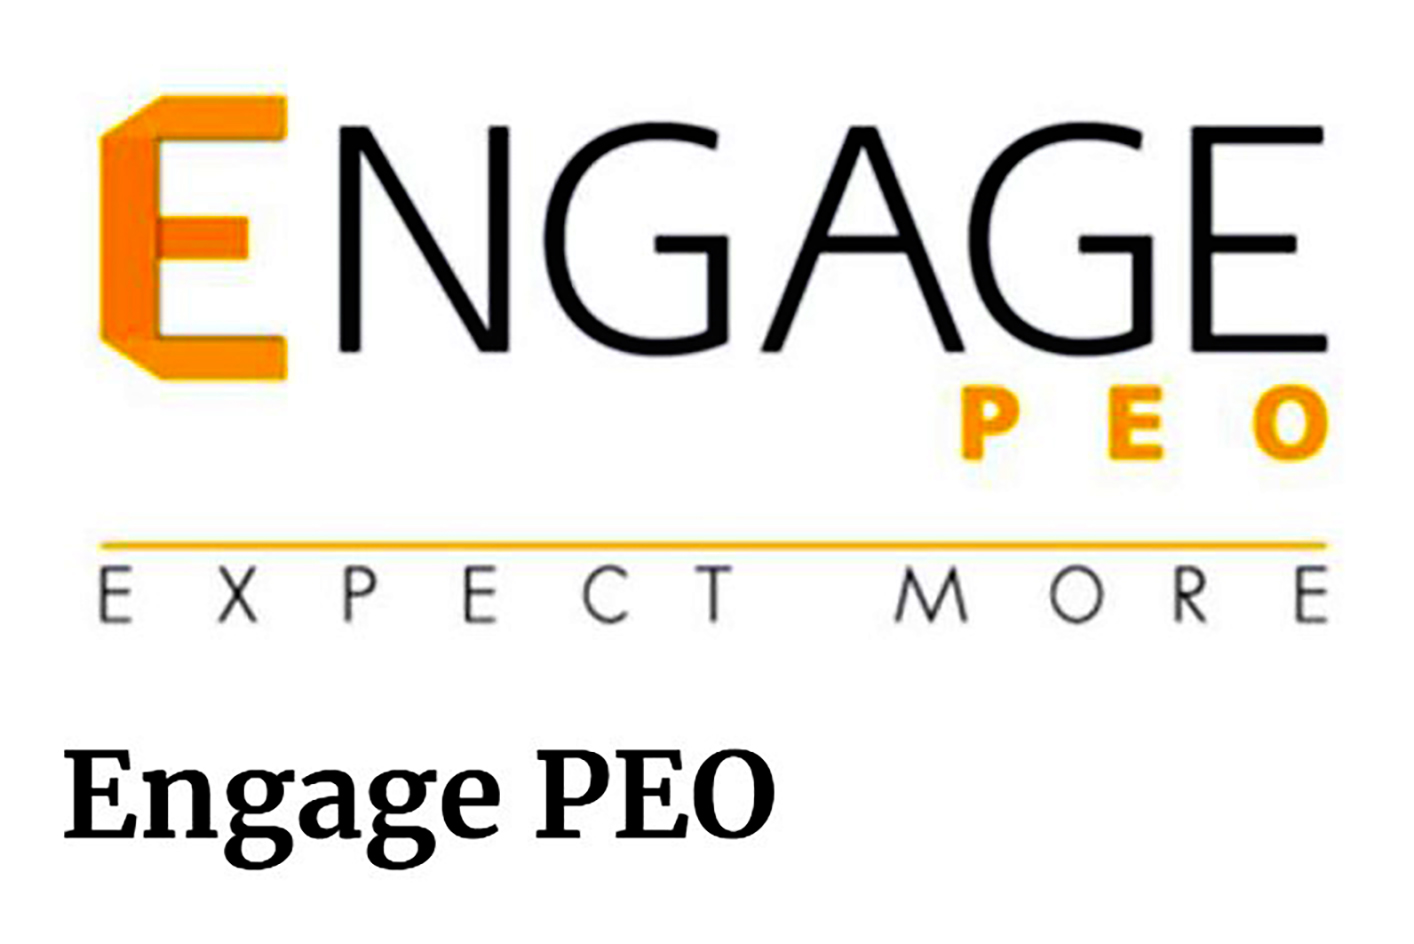 Engage PEO Employee Login